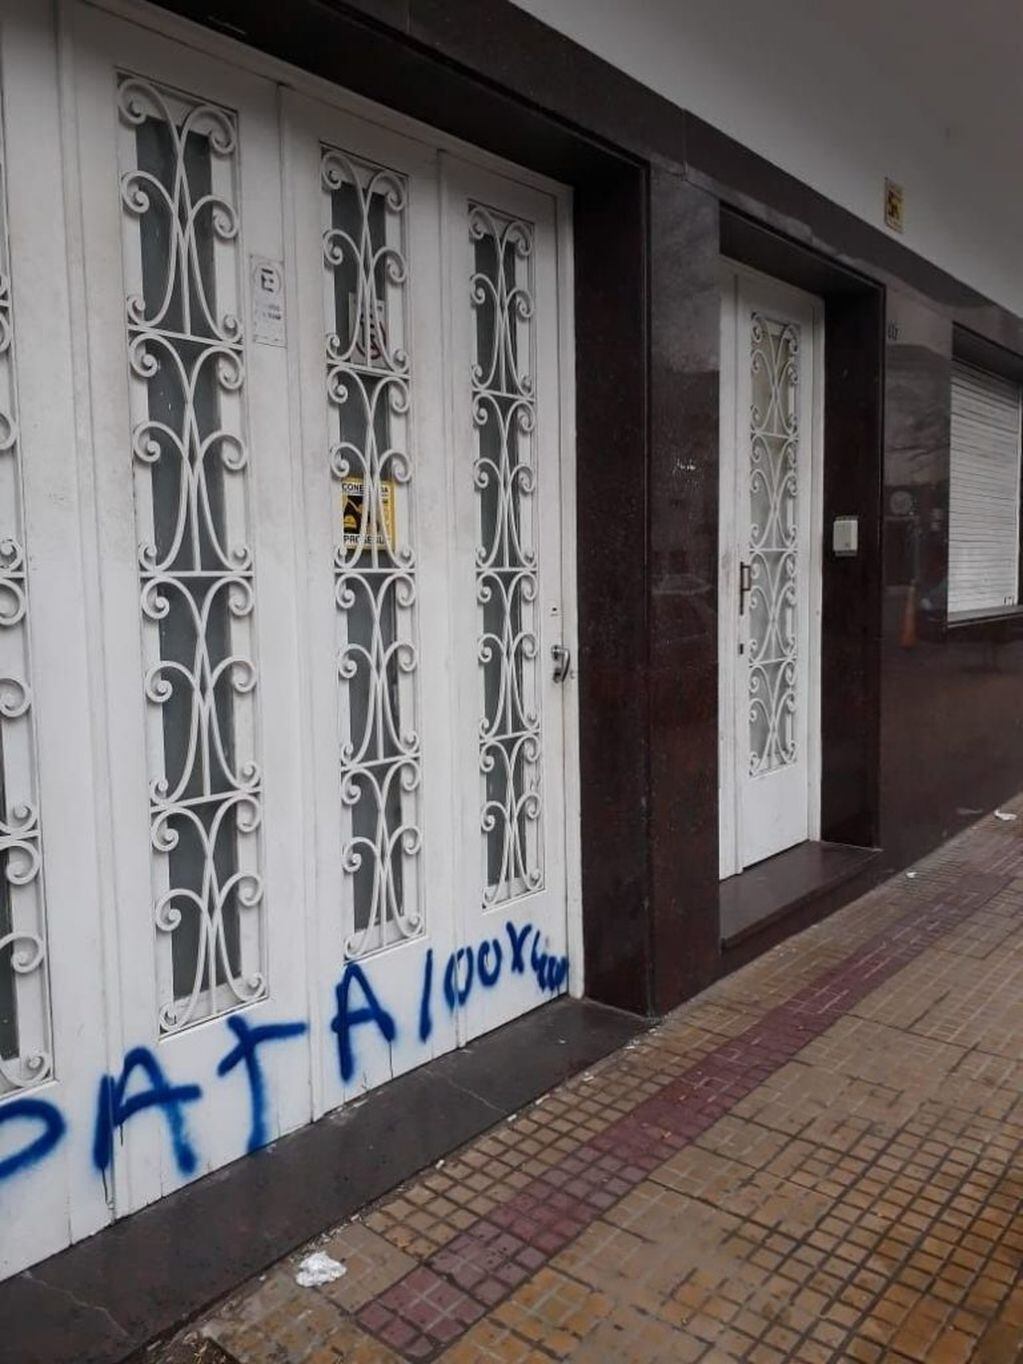 Balearon la sede de la UOCRA en La Plata.